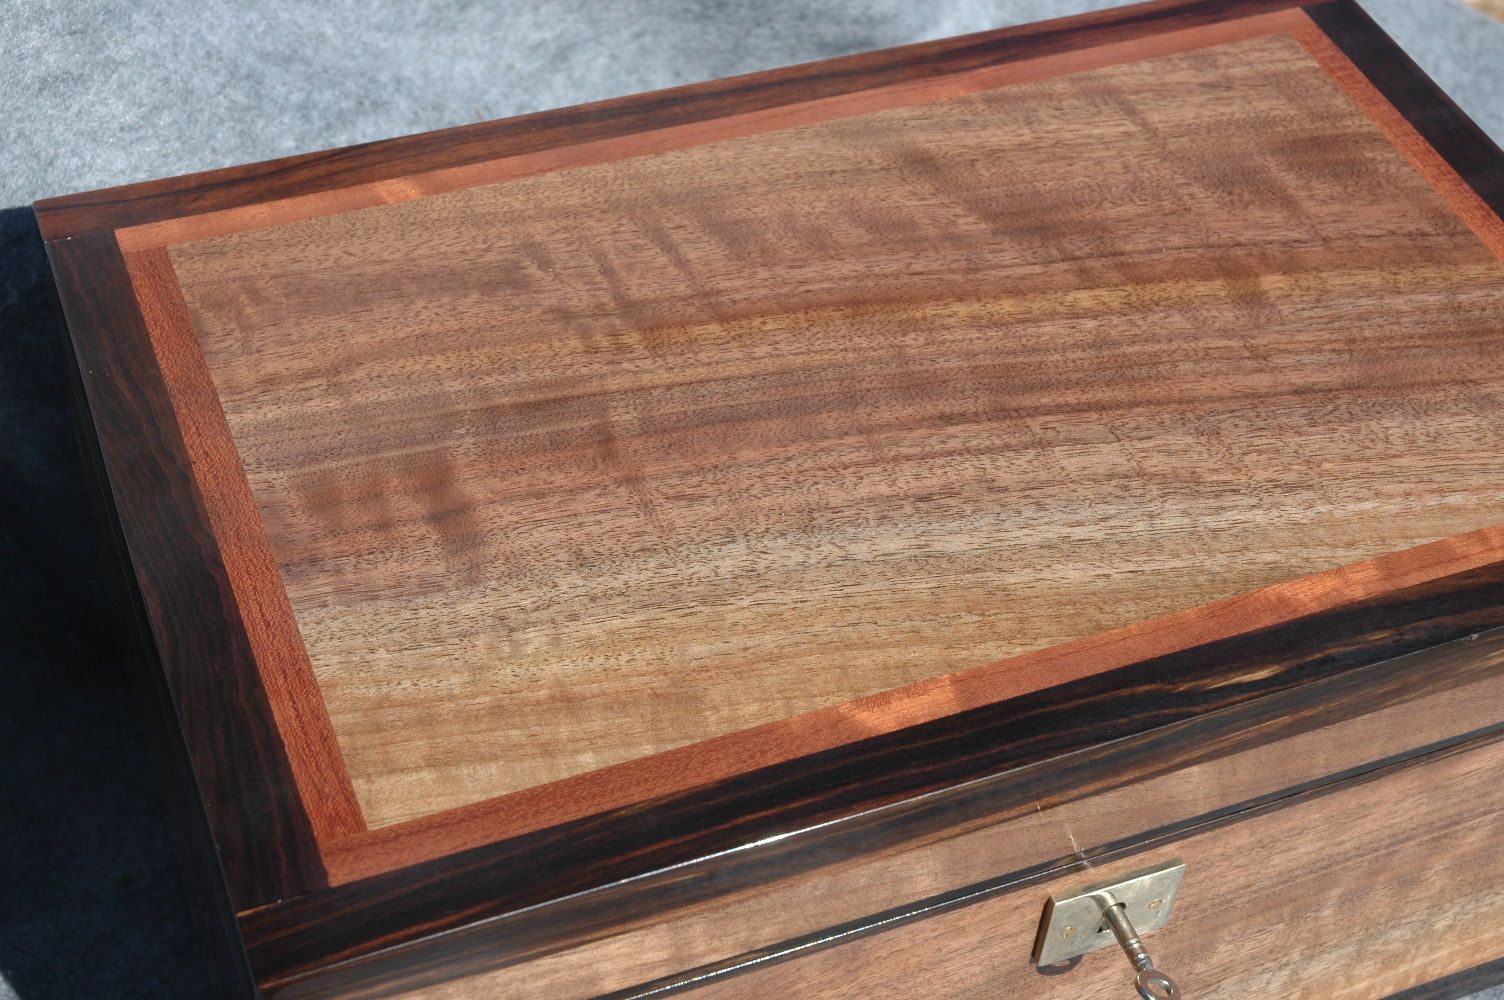 Walnut keepsake box with ebony trim museum quality